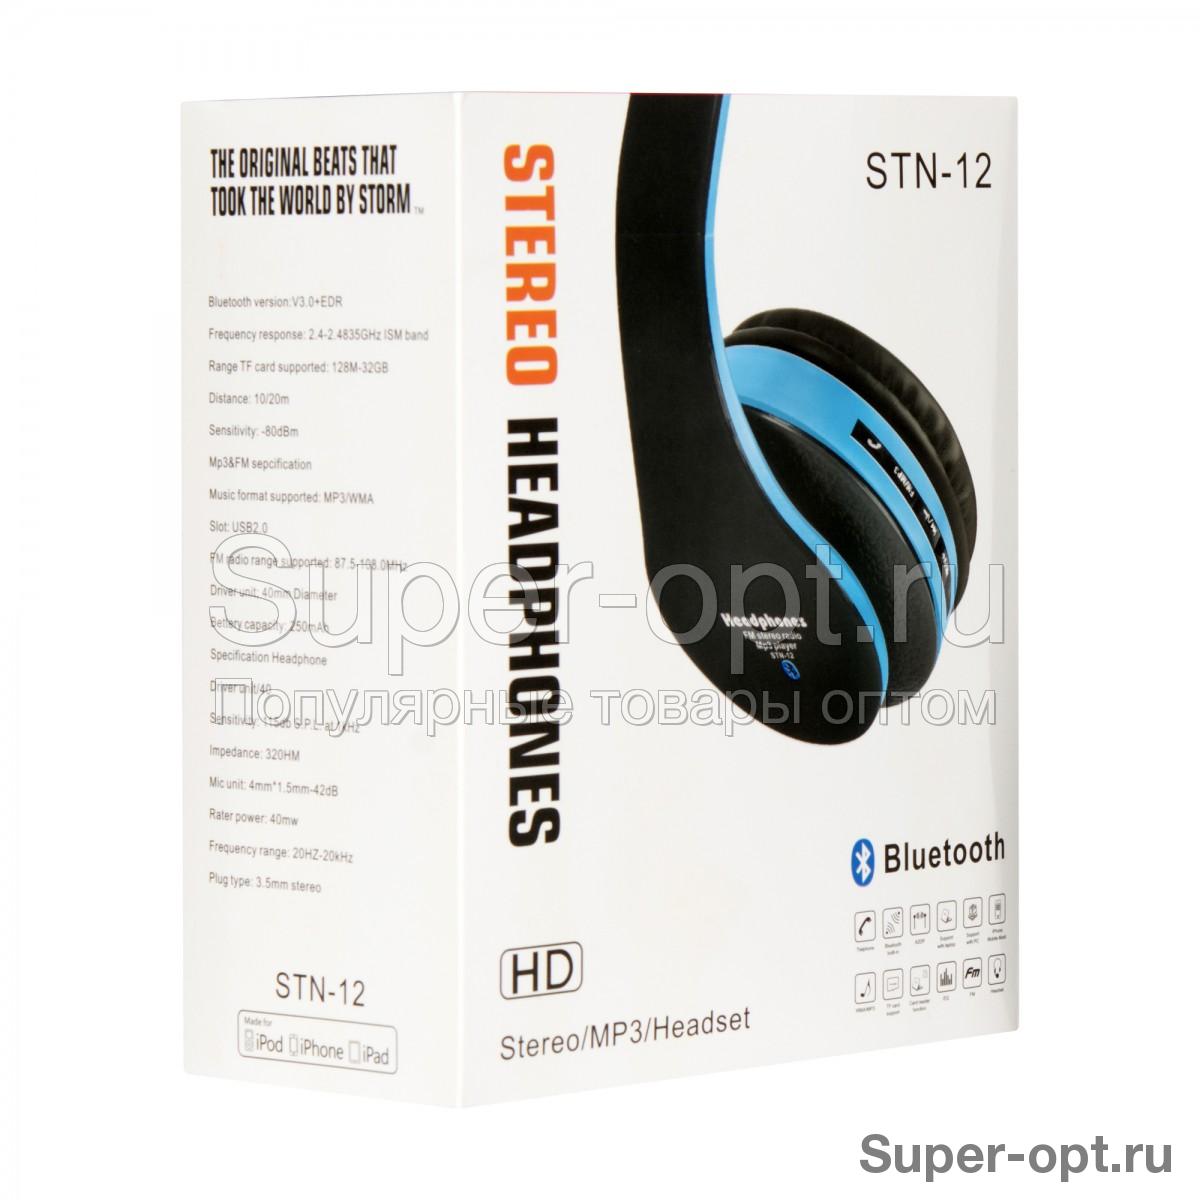 Беспроводные Bluetooth наушники Stereo Headphones STN-12